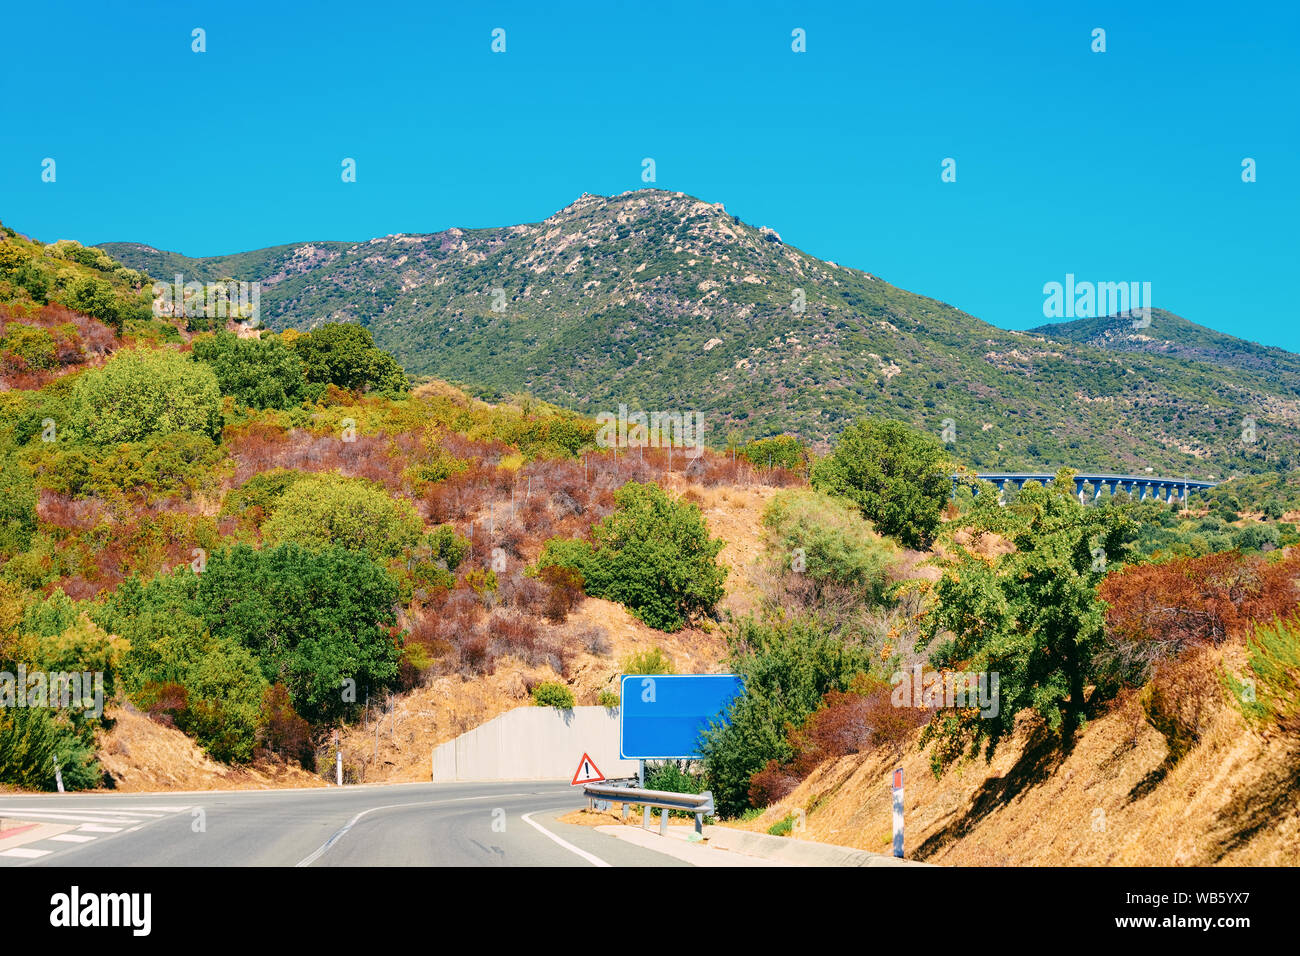 Paesaggio di paesaggi e di strada nel centro di Villasimius in provincia di Cagliari in Sardegna in Italia. Foto Stock